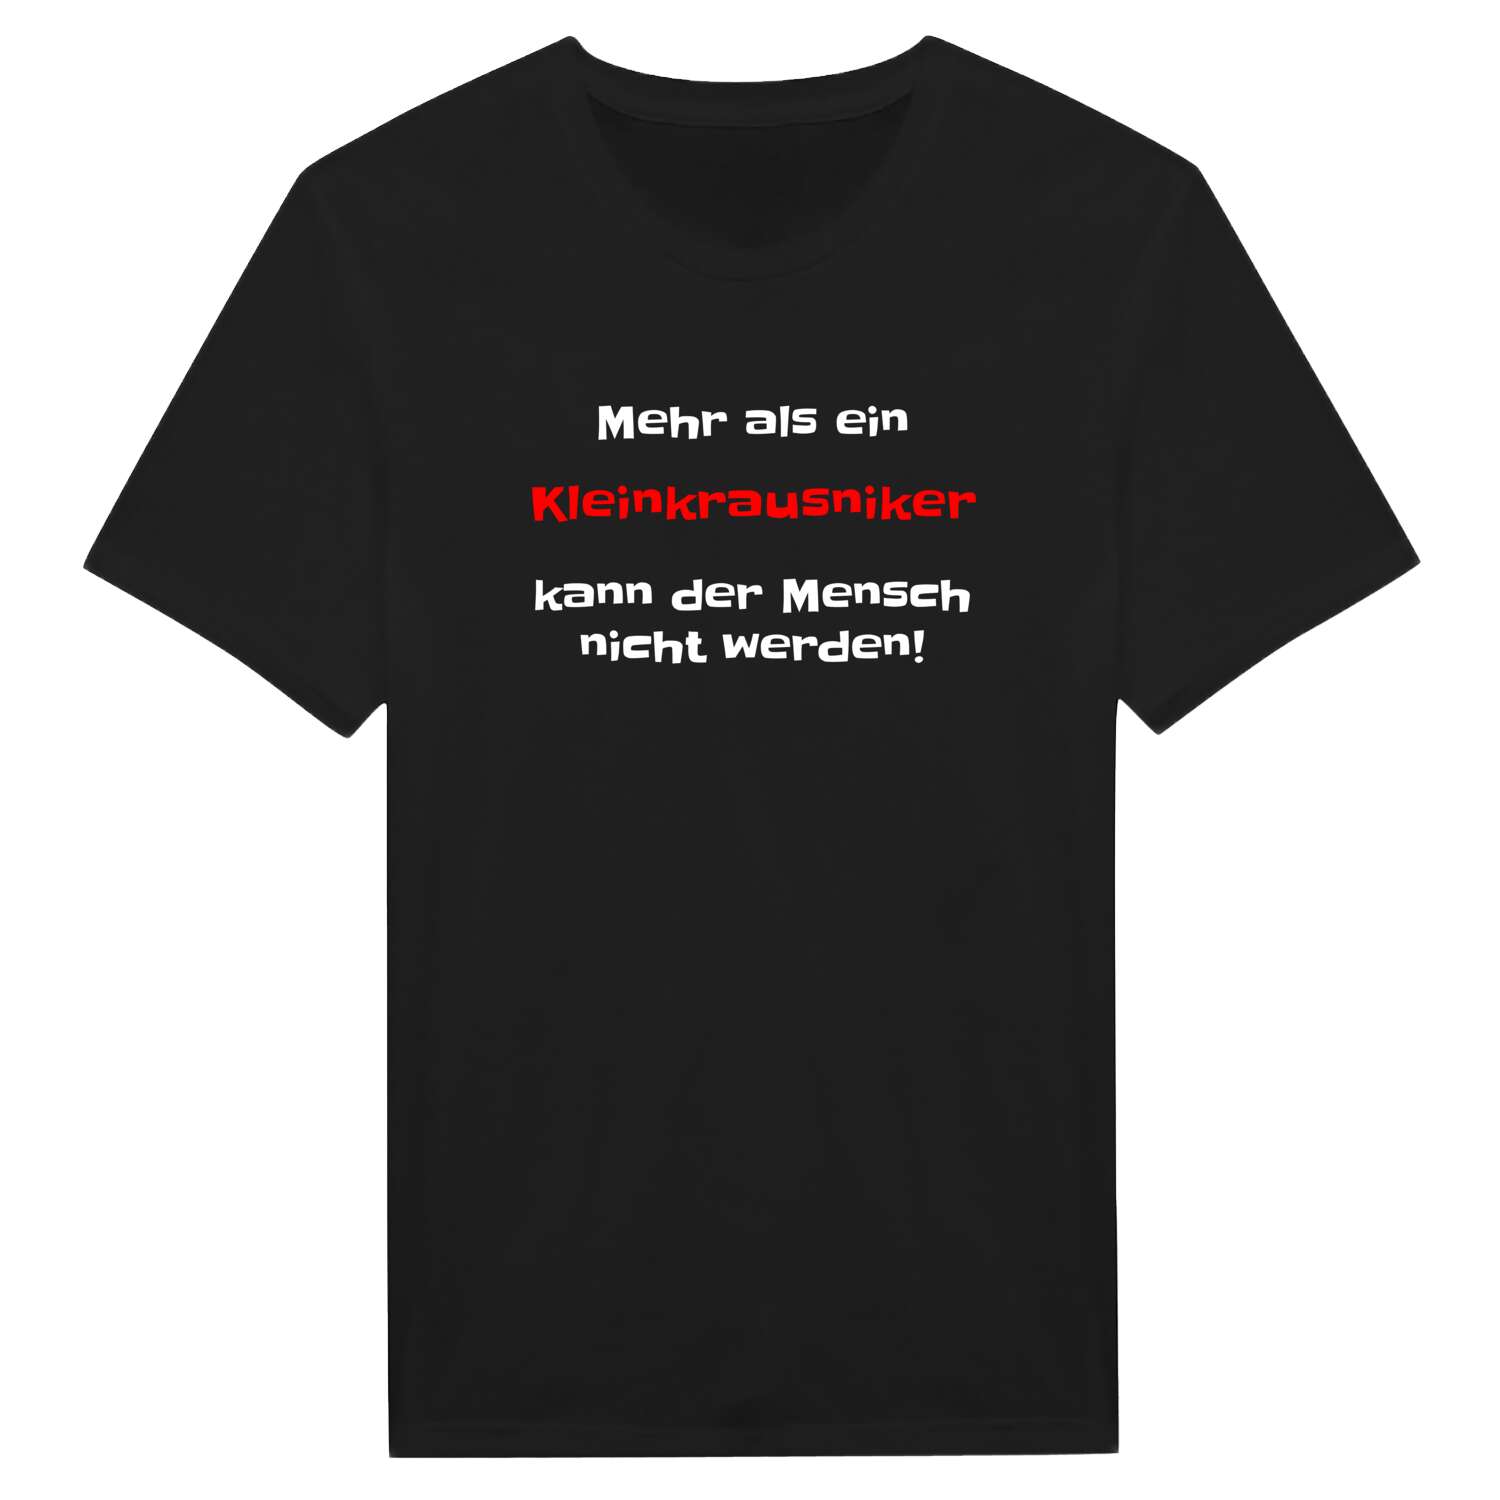 Kleinkrausnik T-Shirt »Mehr als ein«